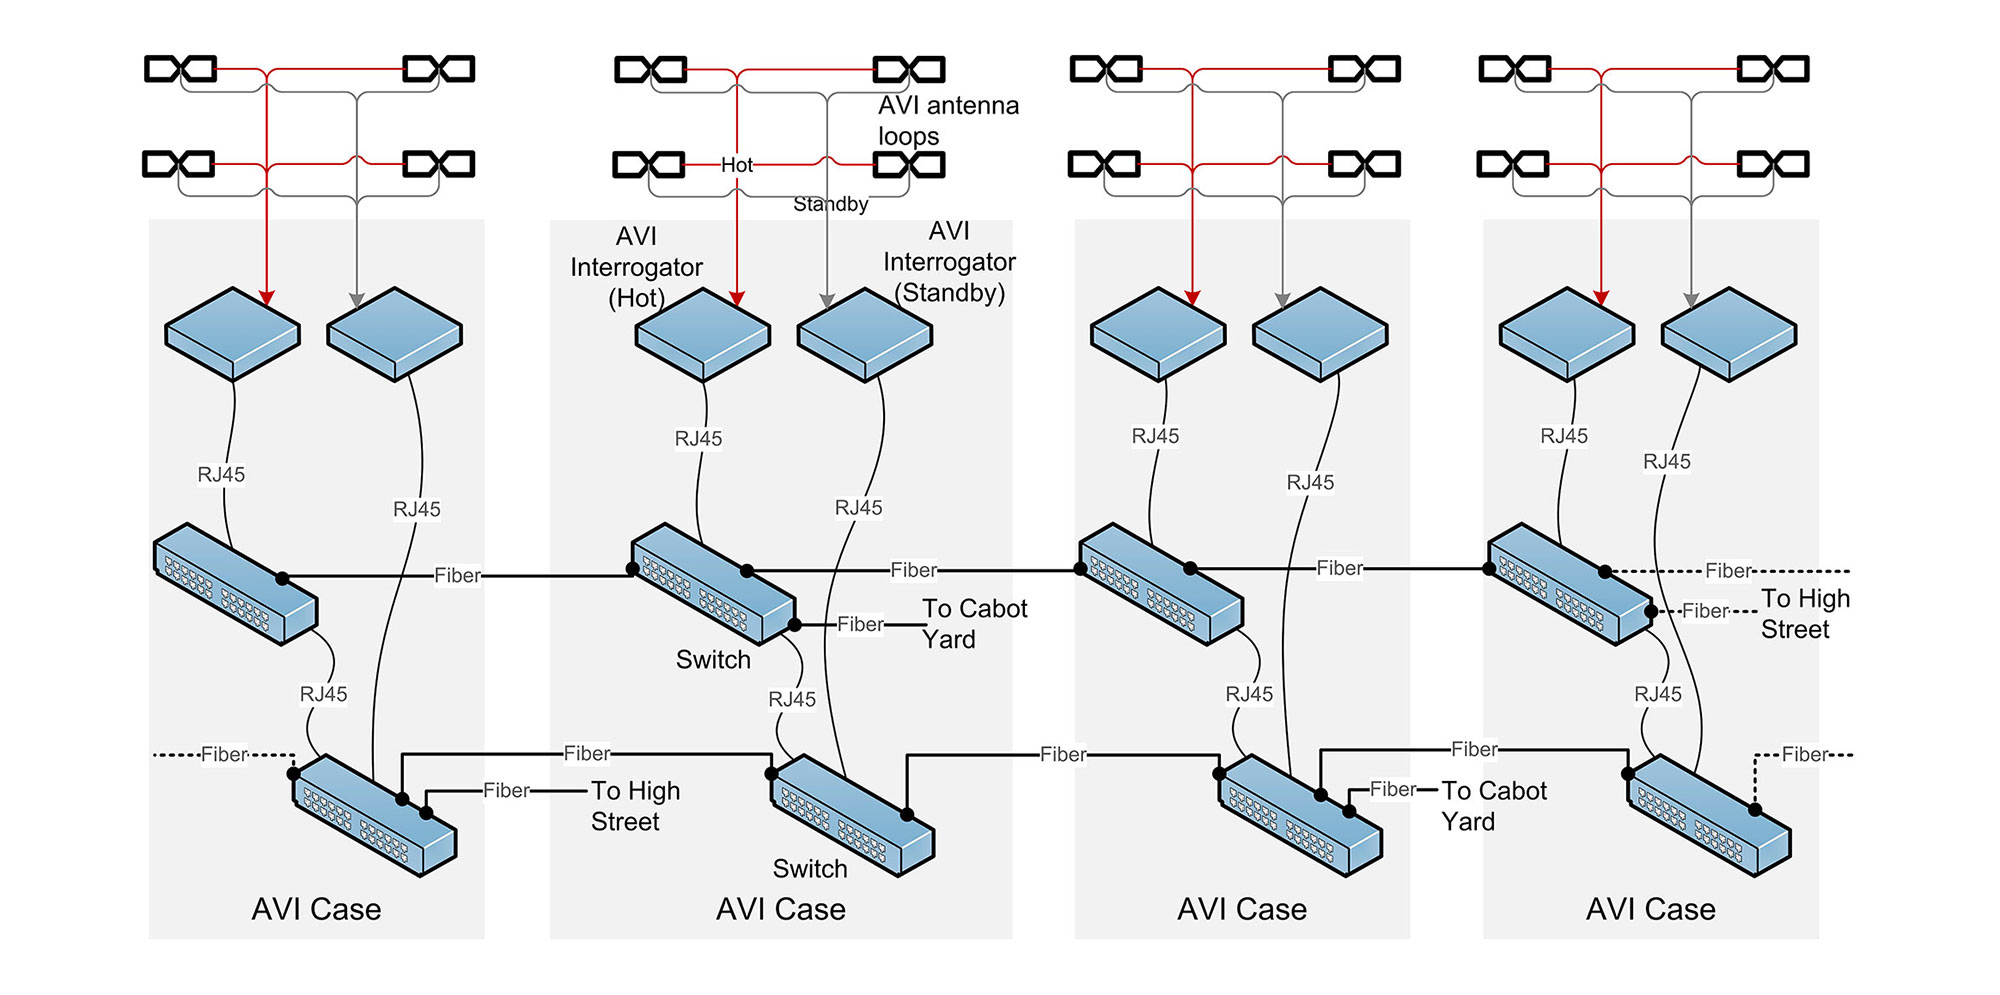 MBTA descriptive diagram of AVI Case. For full text, download project PDF below.